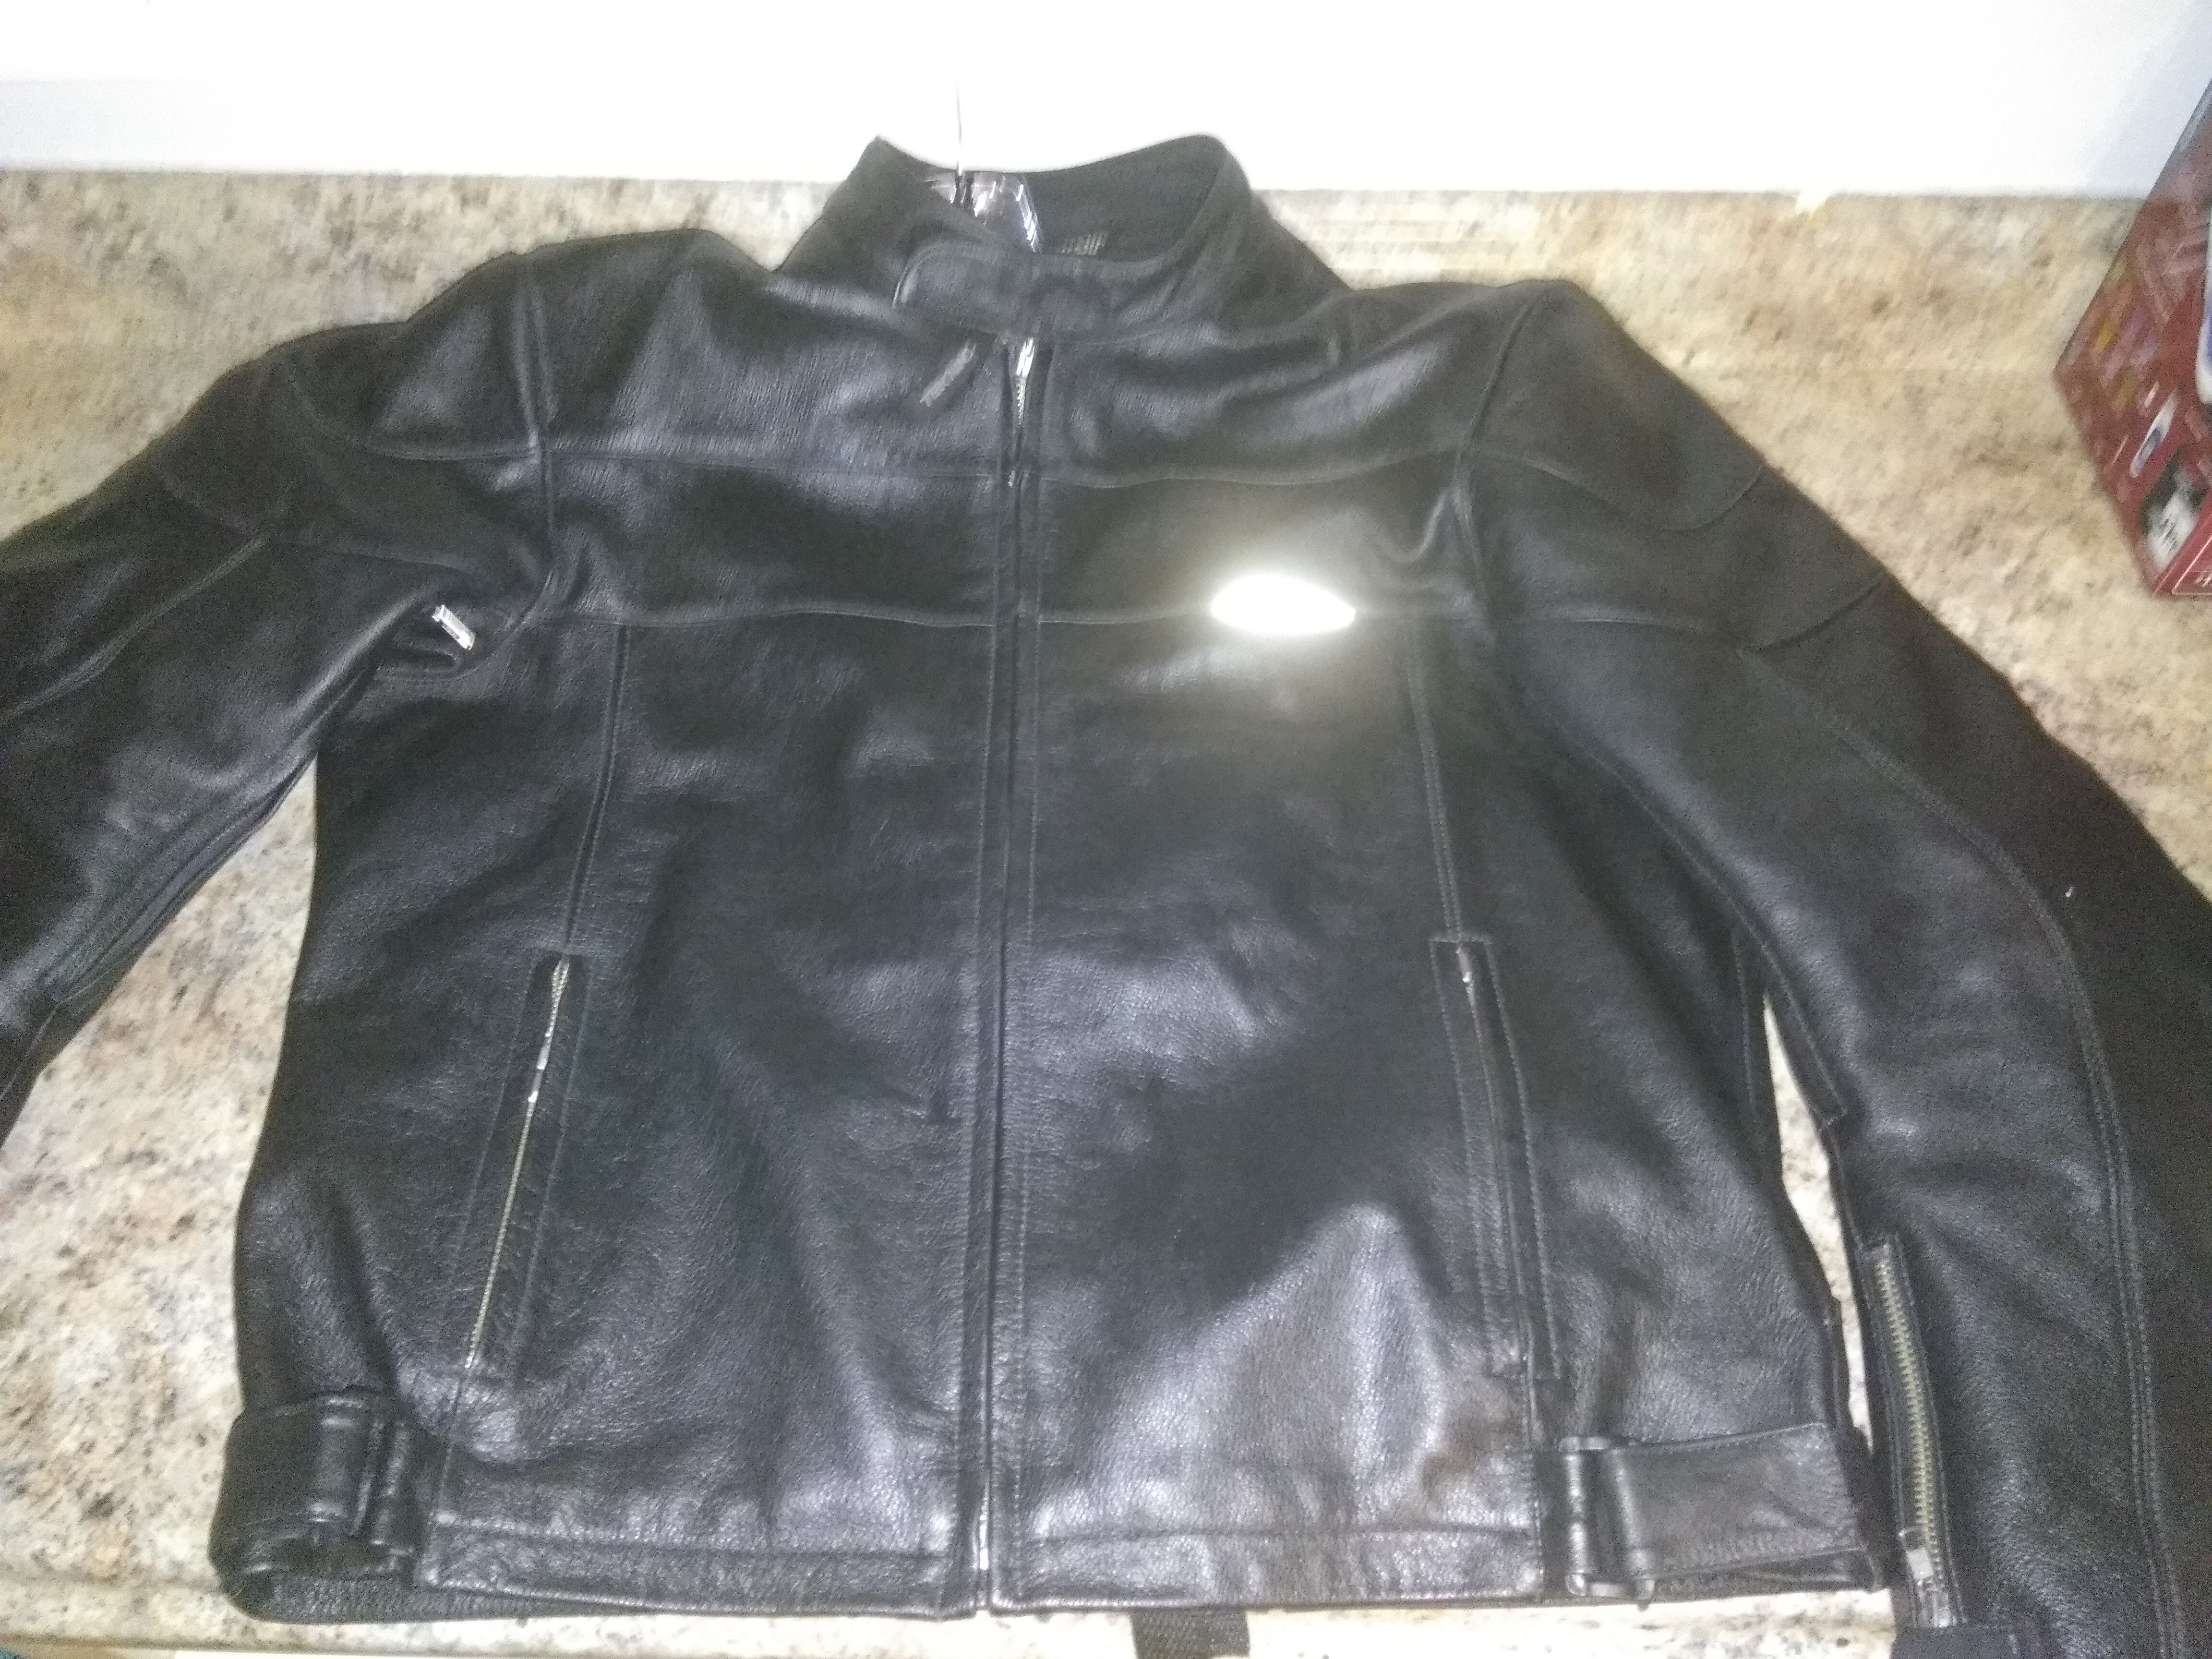 Tecknic Calvary leather jacket size Large